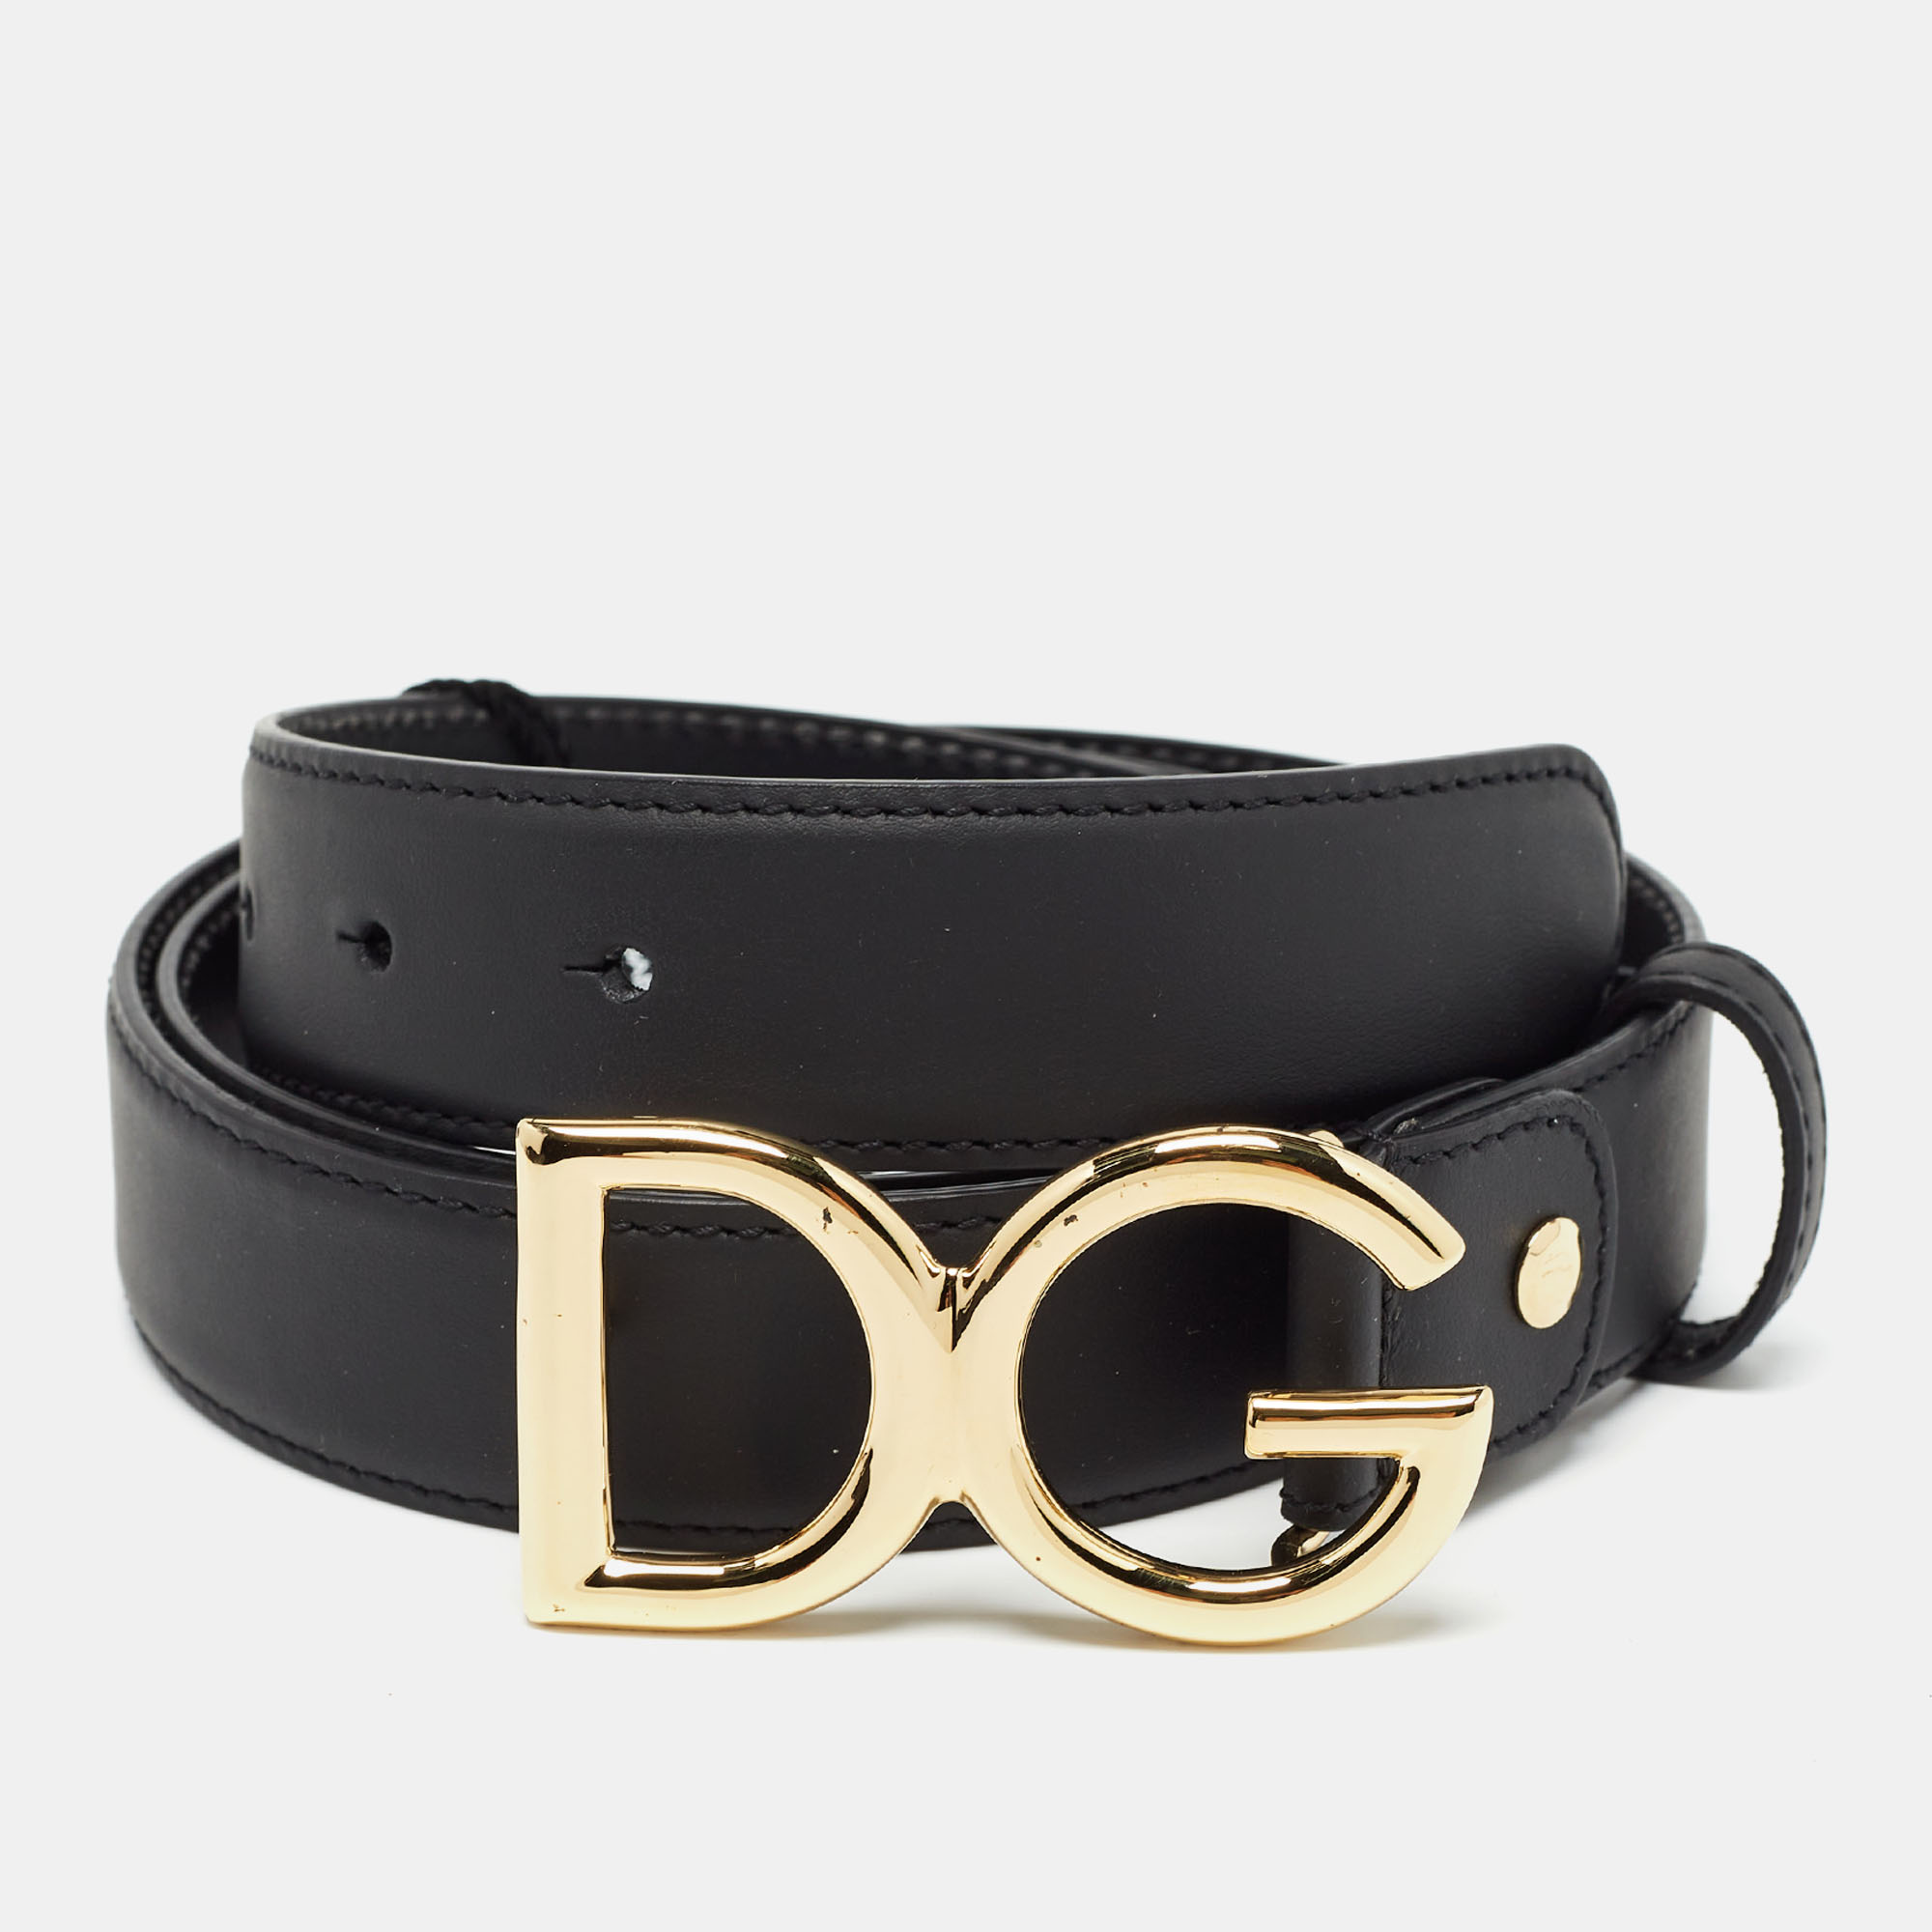 Dolce & gabbana black leather dg logo buckle belt 115 cm